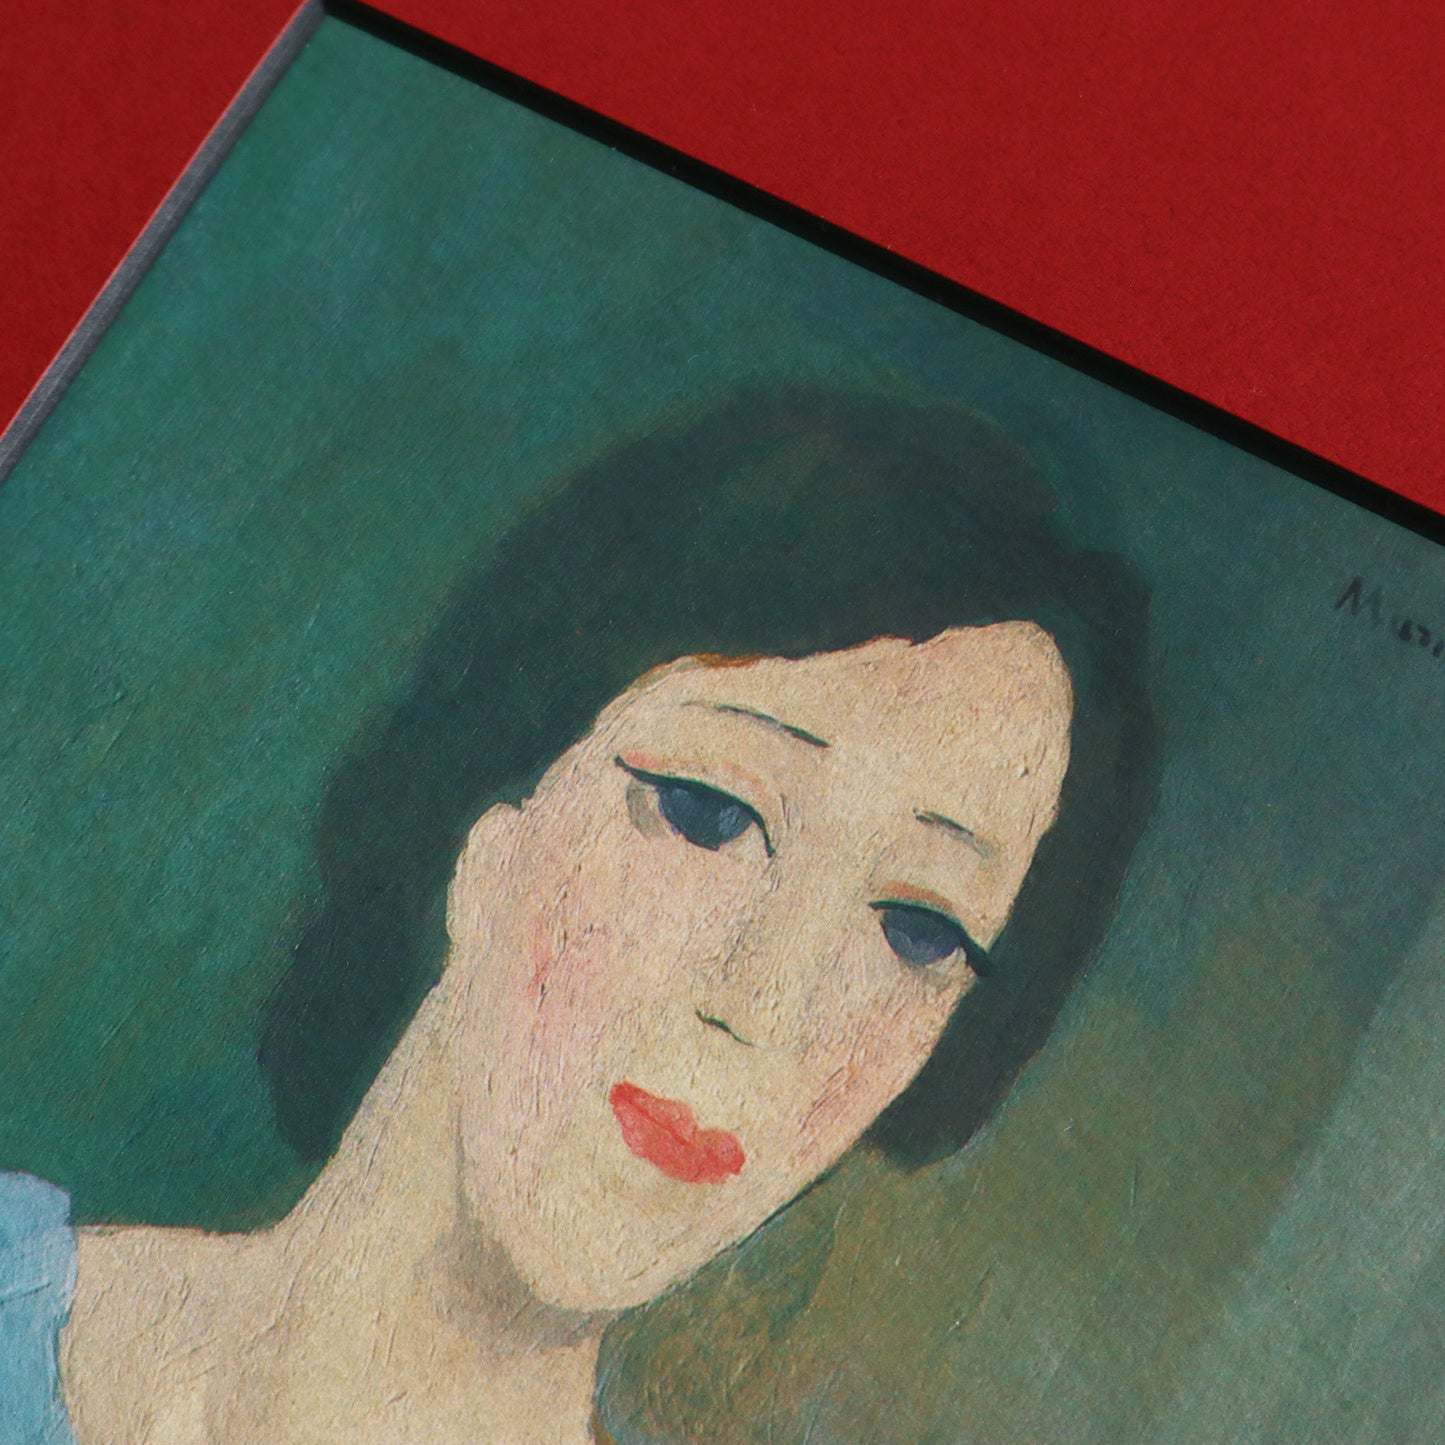 マリー・ローランサン 「デュヴィーン家出のフローランス・ジャンペルの肖像」アートポスター（フレーム付き） / Marie Laurencin “Portrait de Florence Gimpel, née Duveen” Art Frame